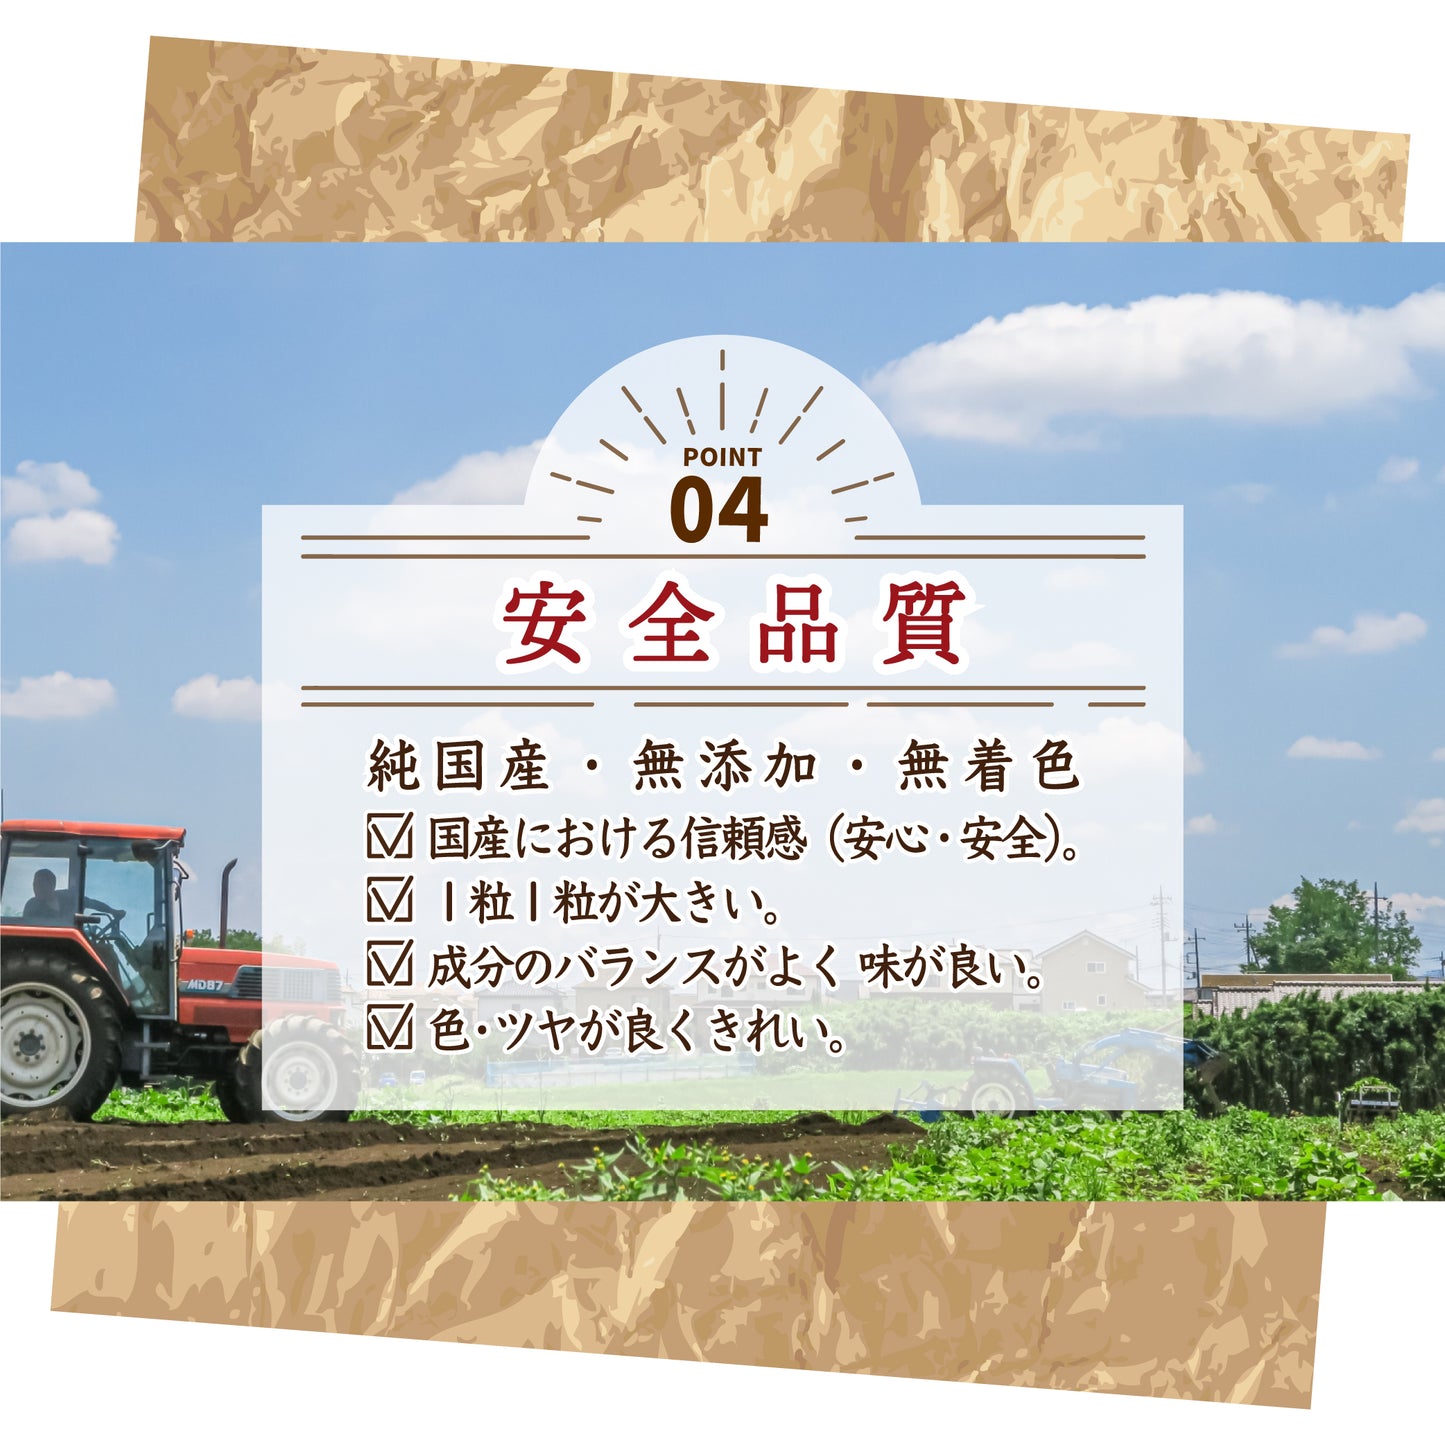 国産 黄大豆 9kg(450g×20袋)